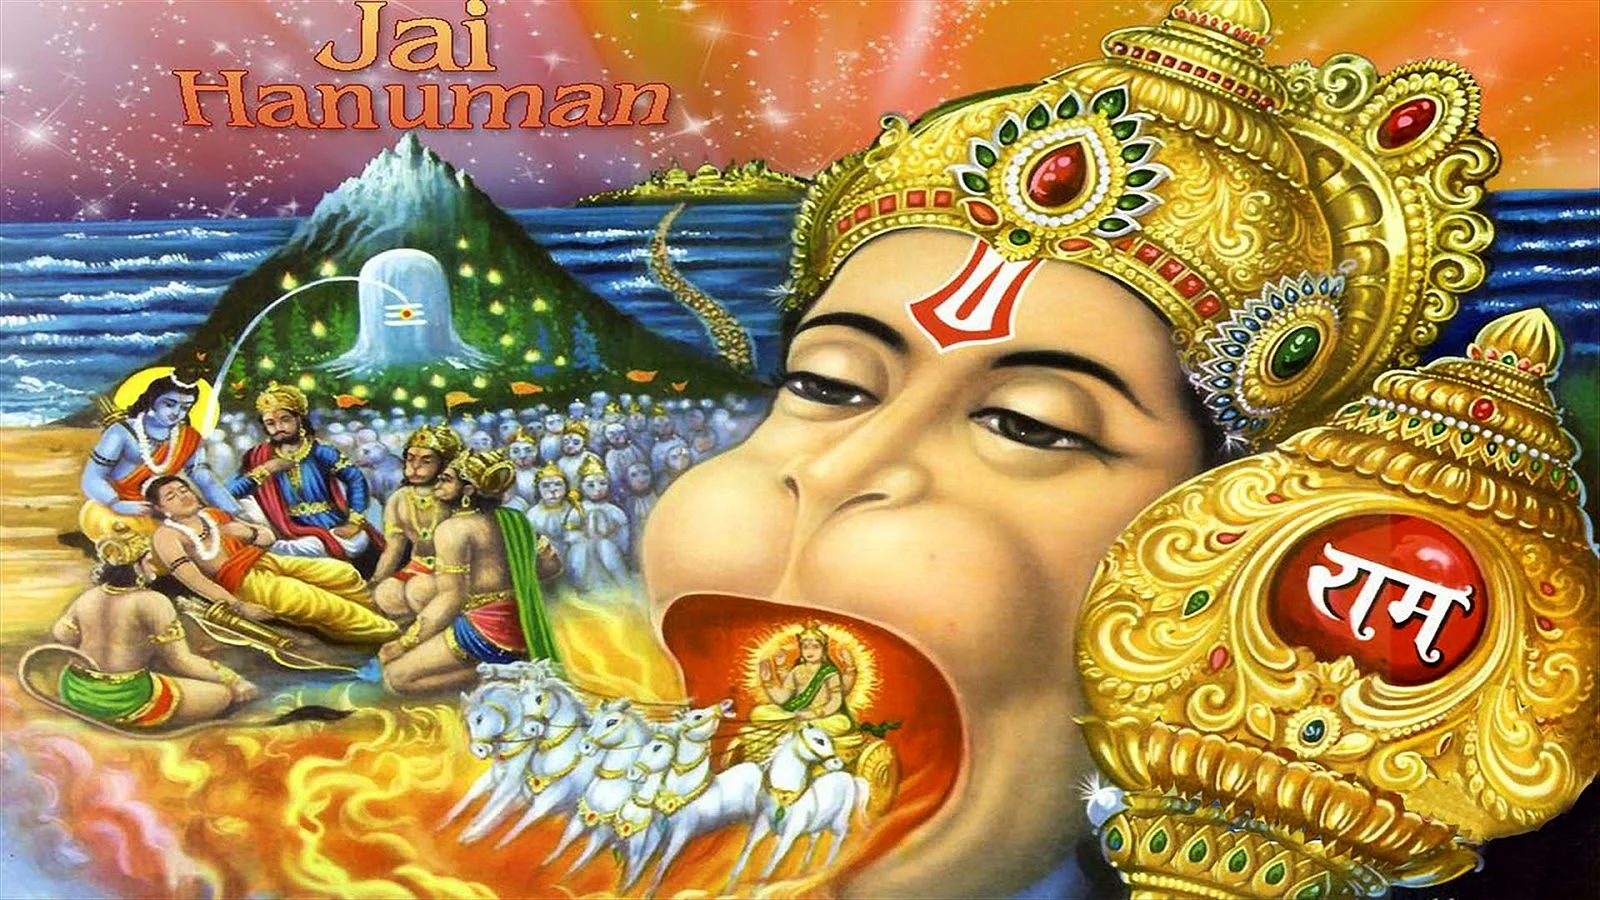 Hindu God 3D Wallpaper